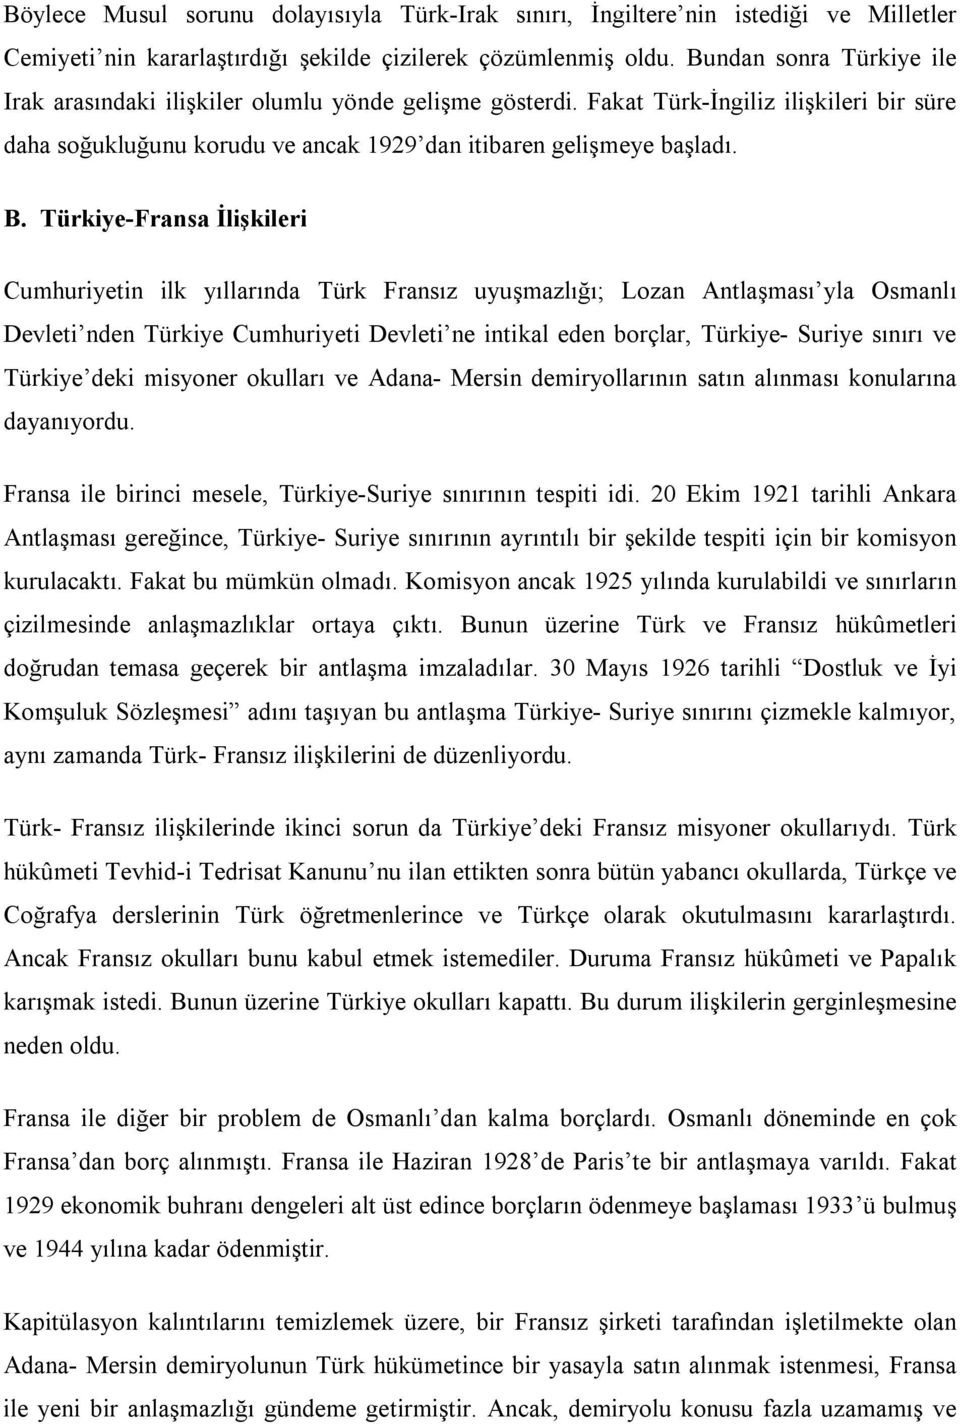 Türkiye-Fransa İlişkileri Cumhuriyetin ilk yıllarında Türk Fransız uyuşmazlığı; Lozan Antlaşması yla Osmanlı Devleti nden Türkiye Cumhuriyeti Devleti ne intikal eden borçlar, Türkiye- Suriye sınırı